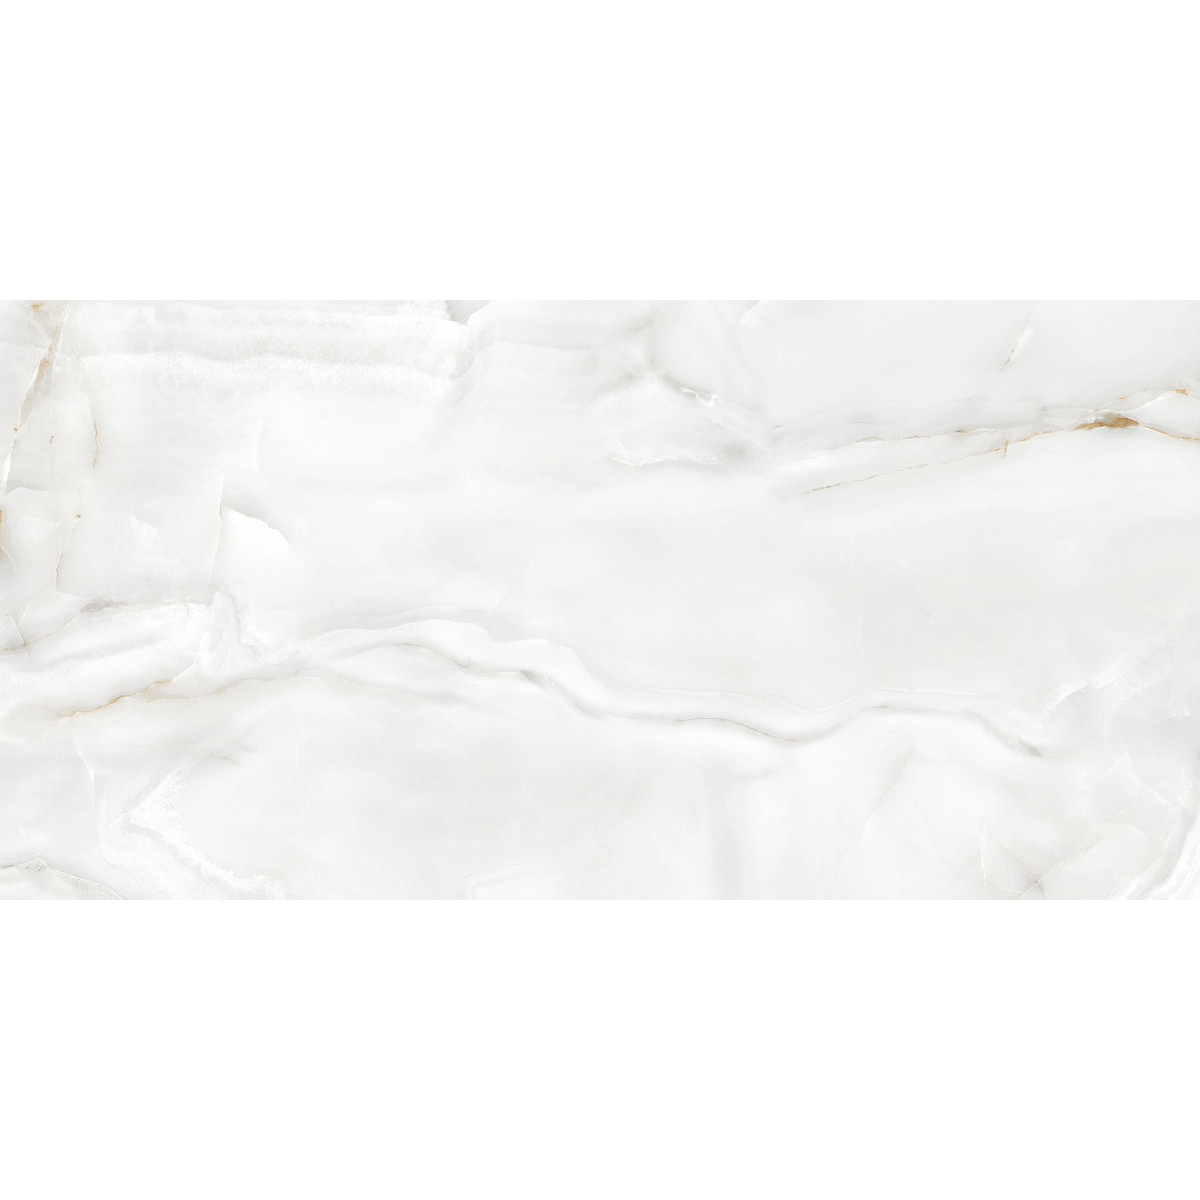 Плитка Ecoceramic Eternal White 004 PL 60x120 см плитка ecoceramic eternal calacatta white 004 pl 60x120 см